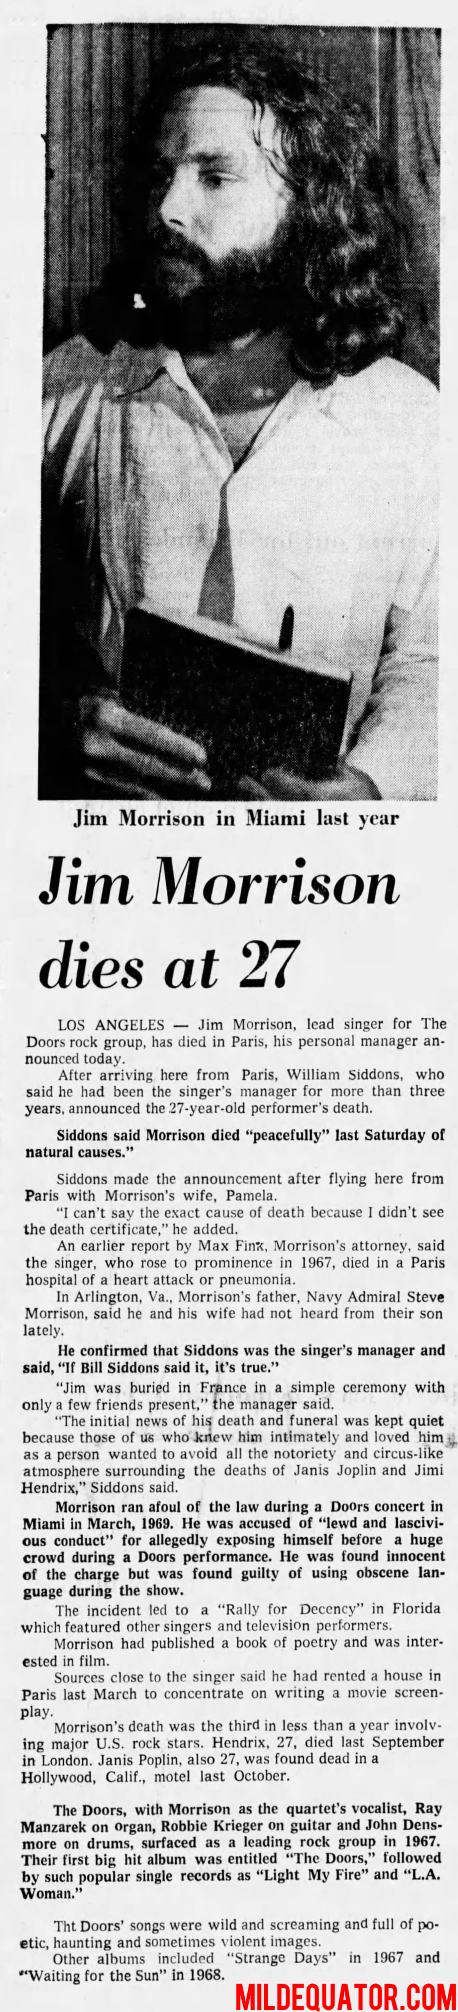 Jim Morrison Death Report - Miami News